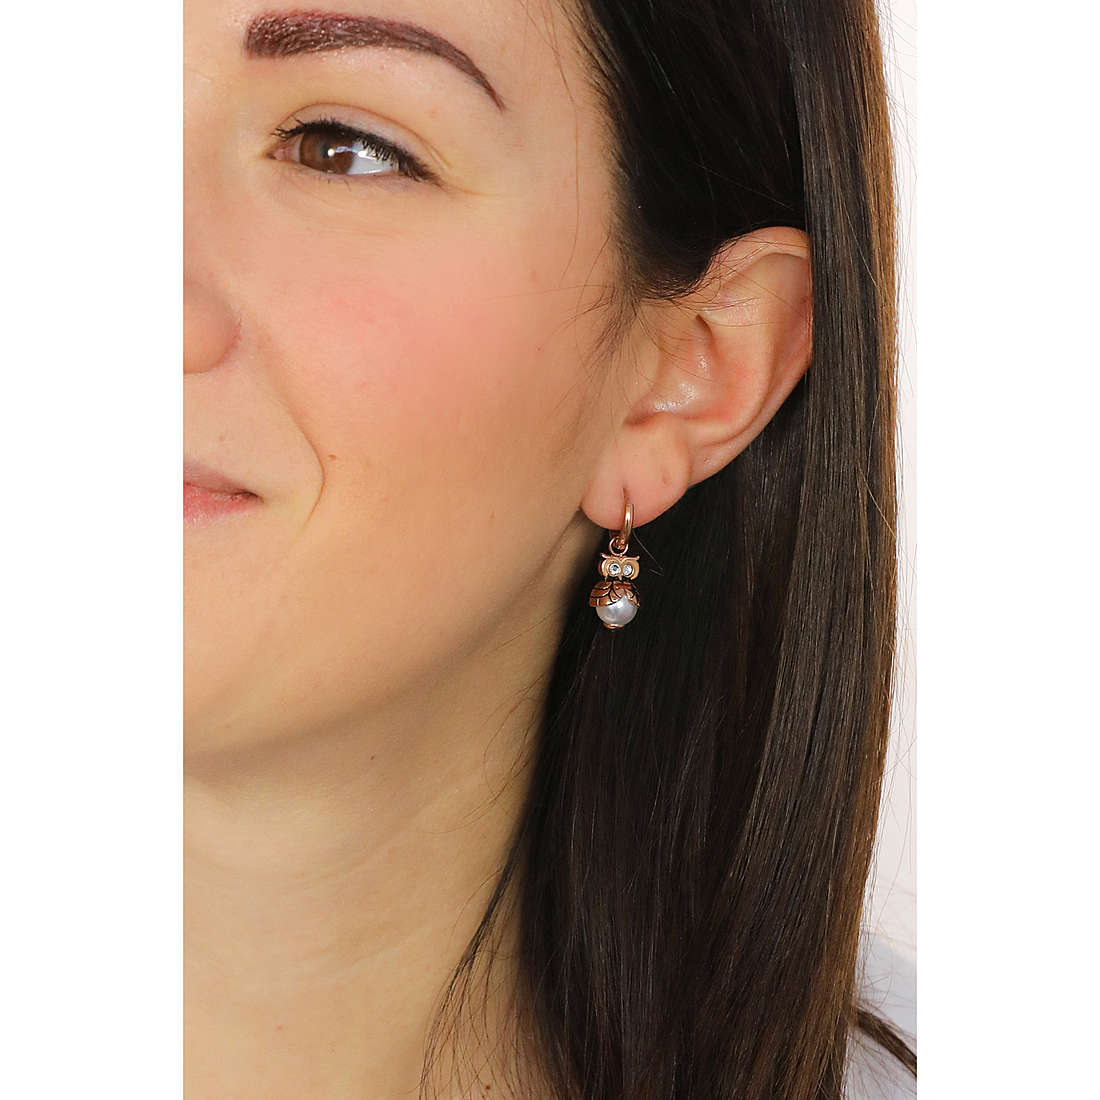 Liujo earrings Tropical Dream woman LJ1635 wearing